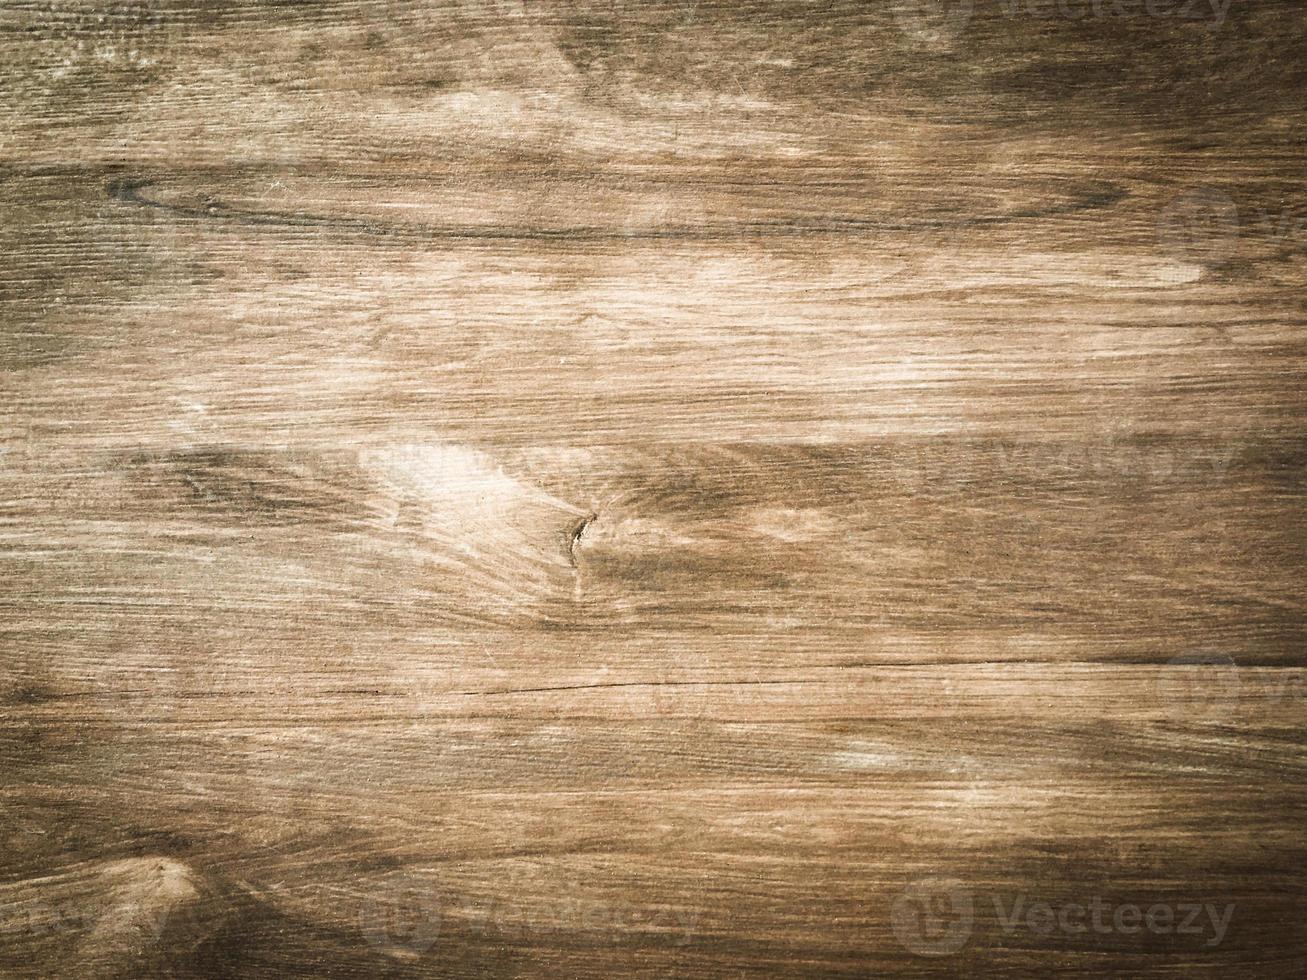 utilisation abstraite de la texture du bois comme arrière-plan naturel pour la conception d'œuvres d'art. photo